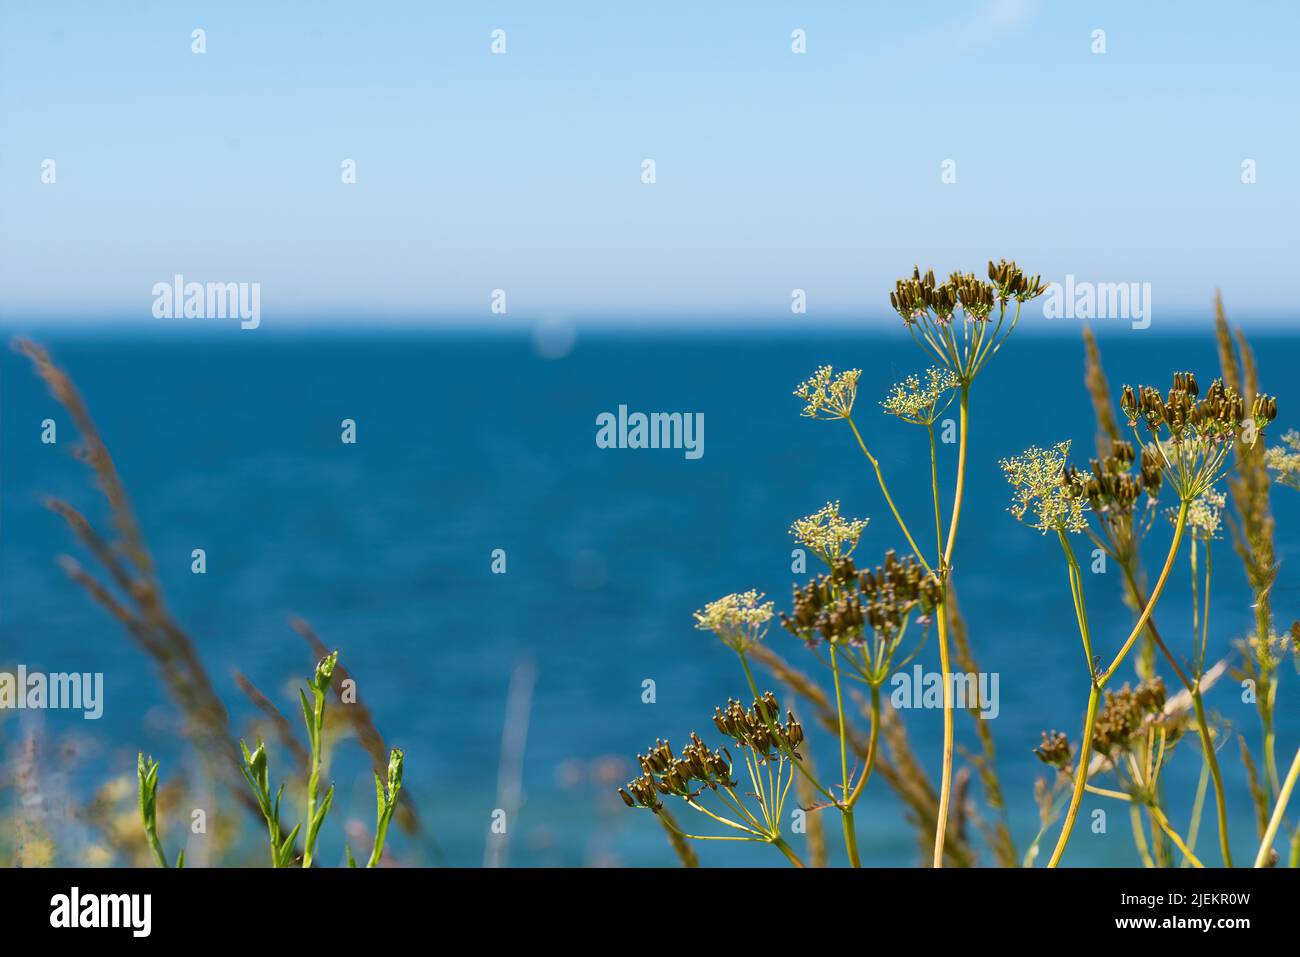 el gorgojo salvaje, anthrisco sylvestris, contra el mar azul y el cielo, fondo de la naturaleza Foto de stock